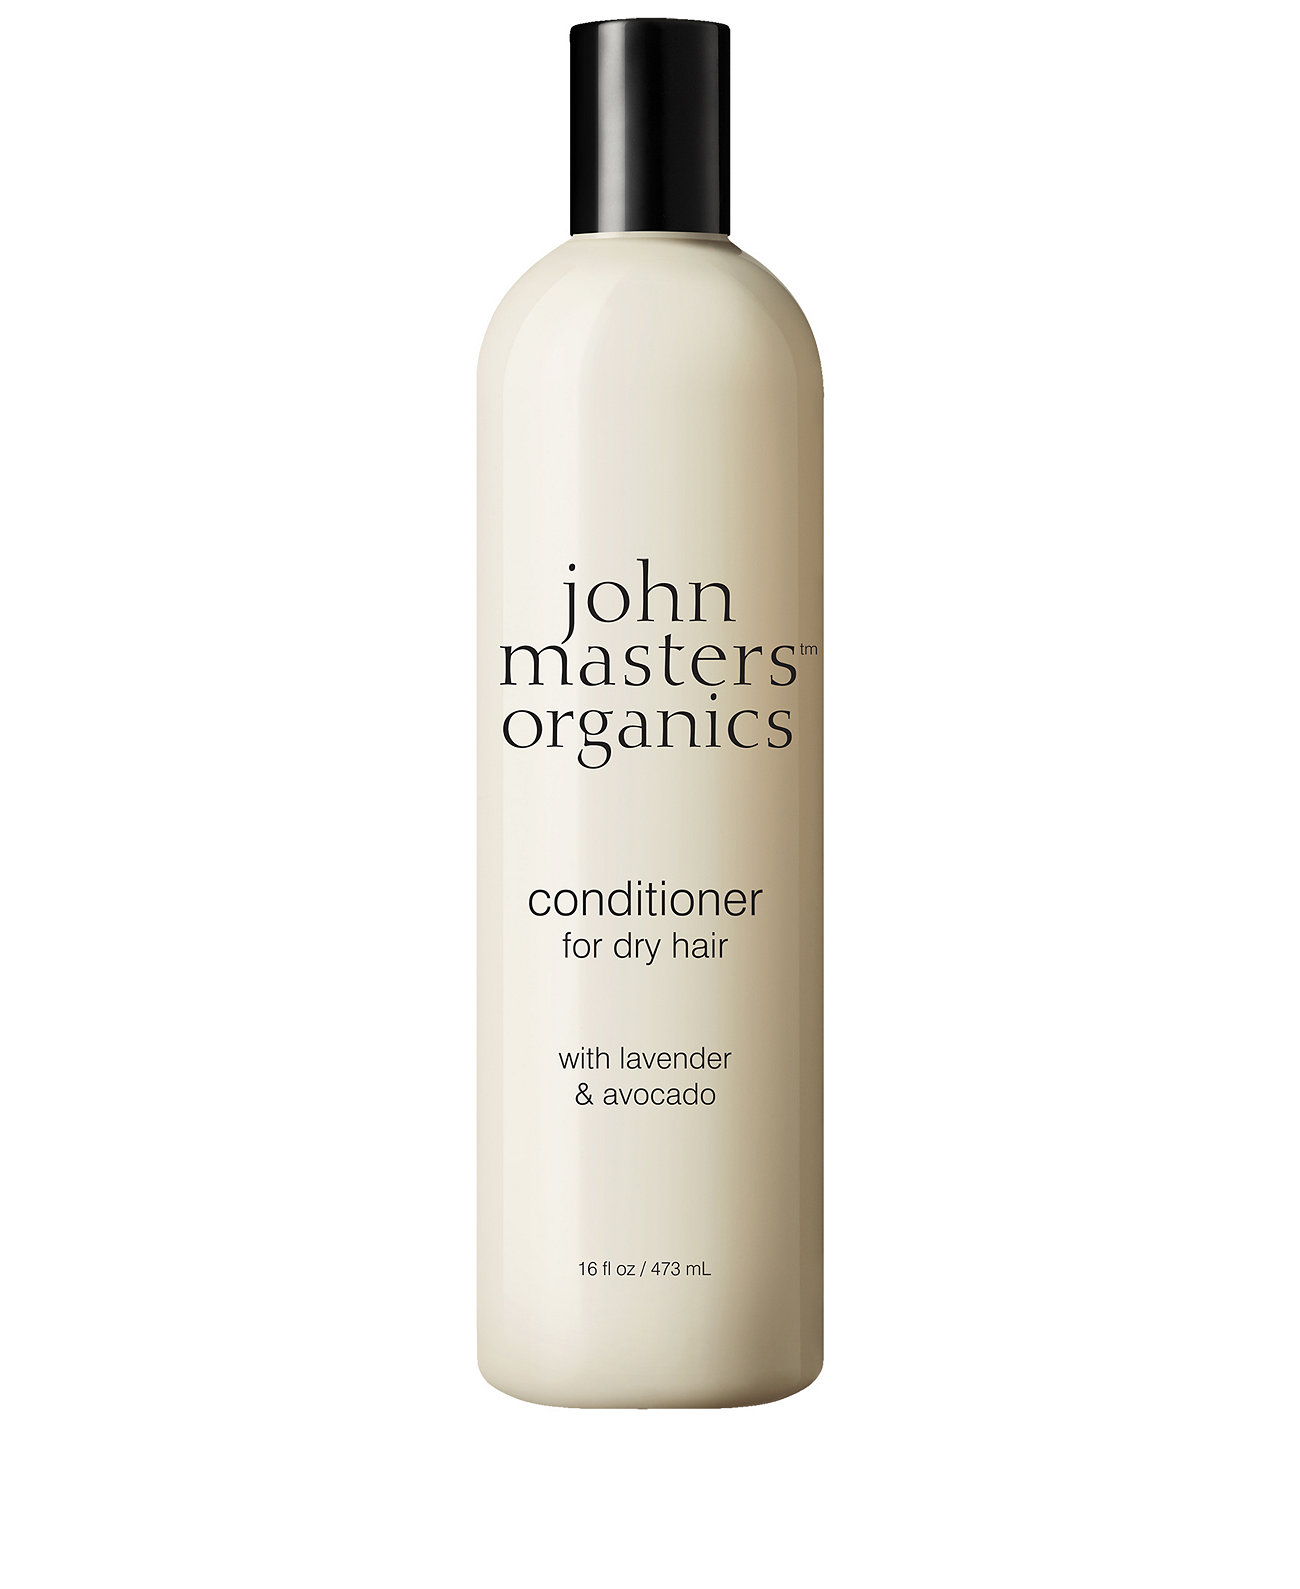 Кондиционер для сухих волос с лавандой и авокадо, 16 унций. John Masters Organics